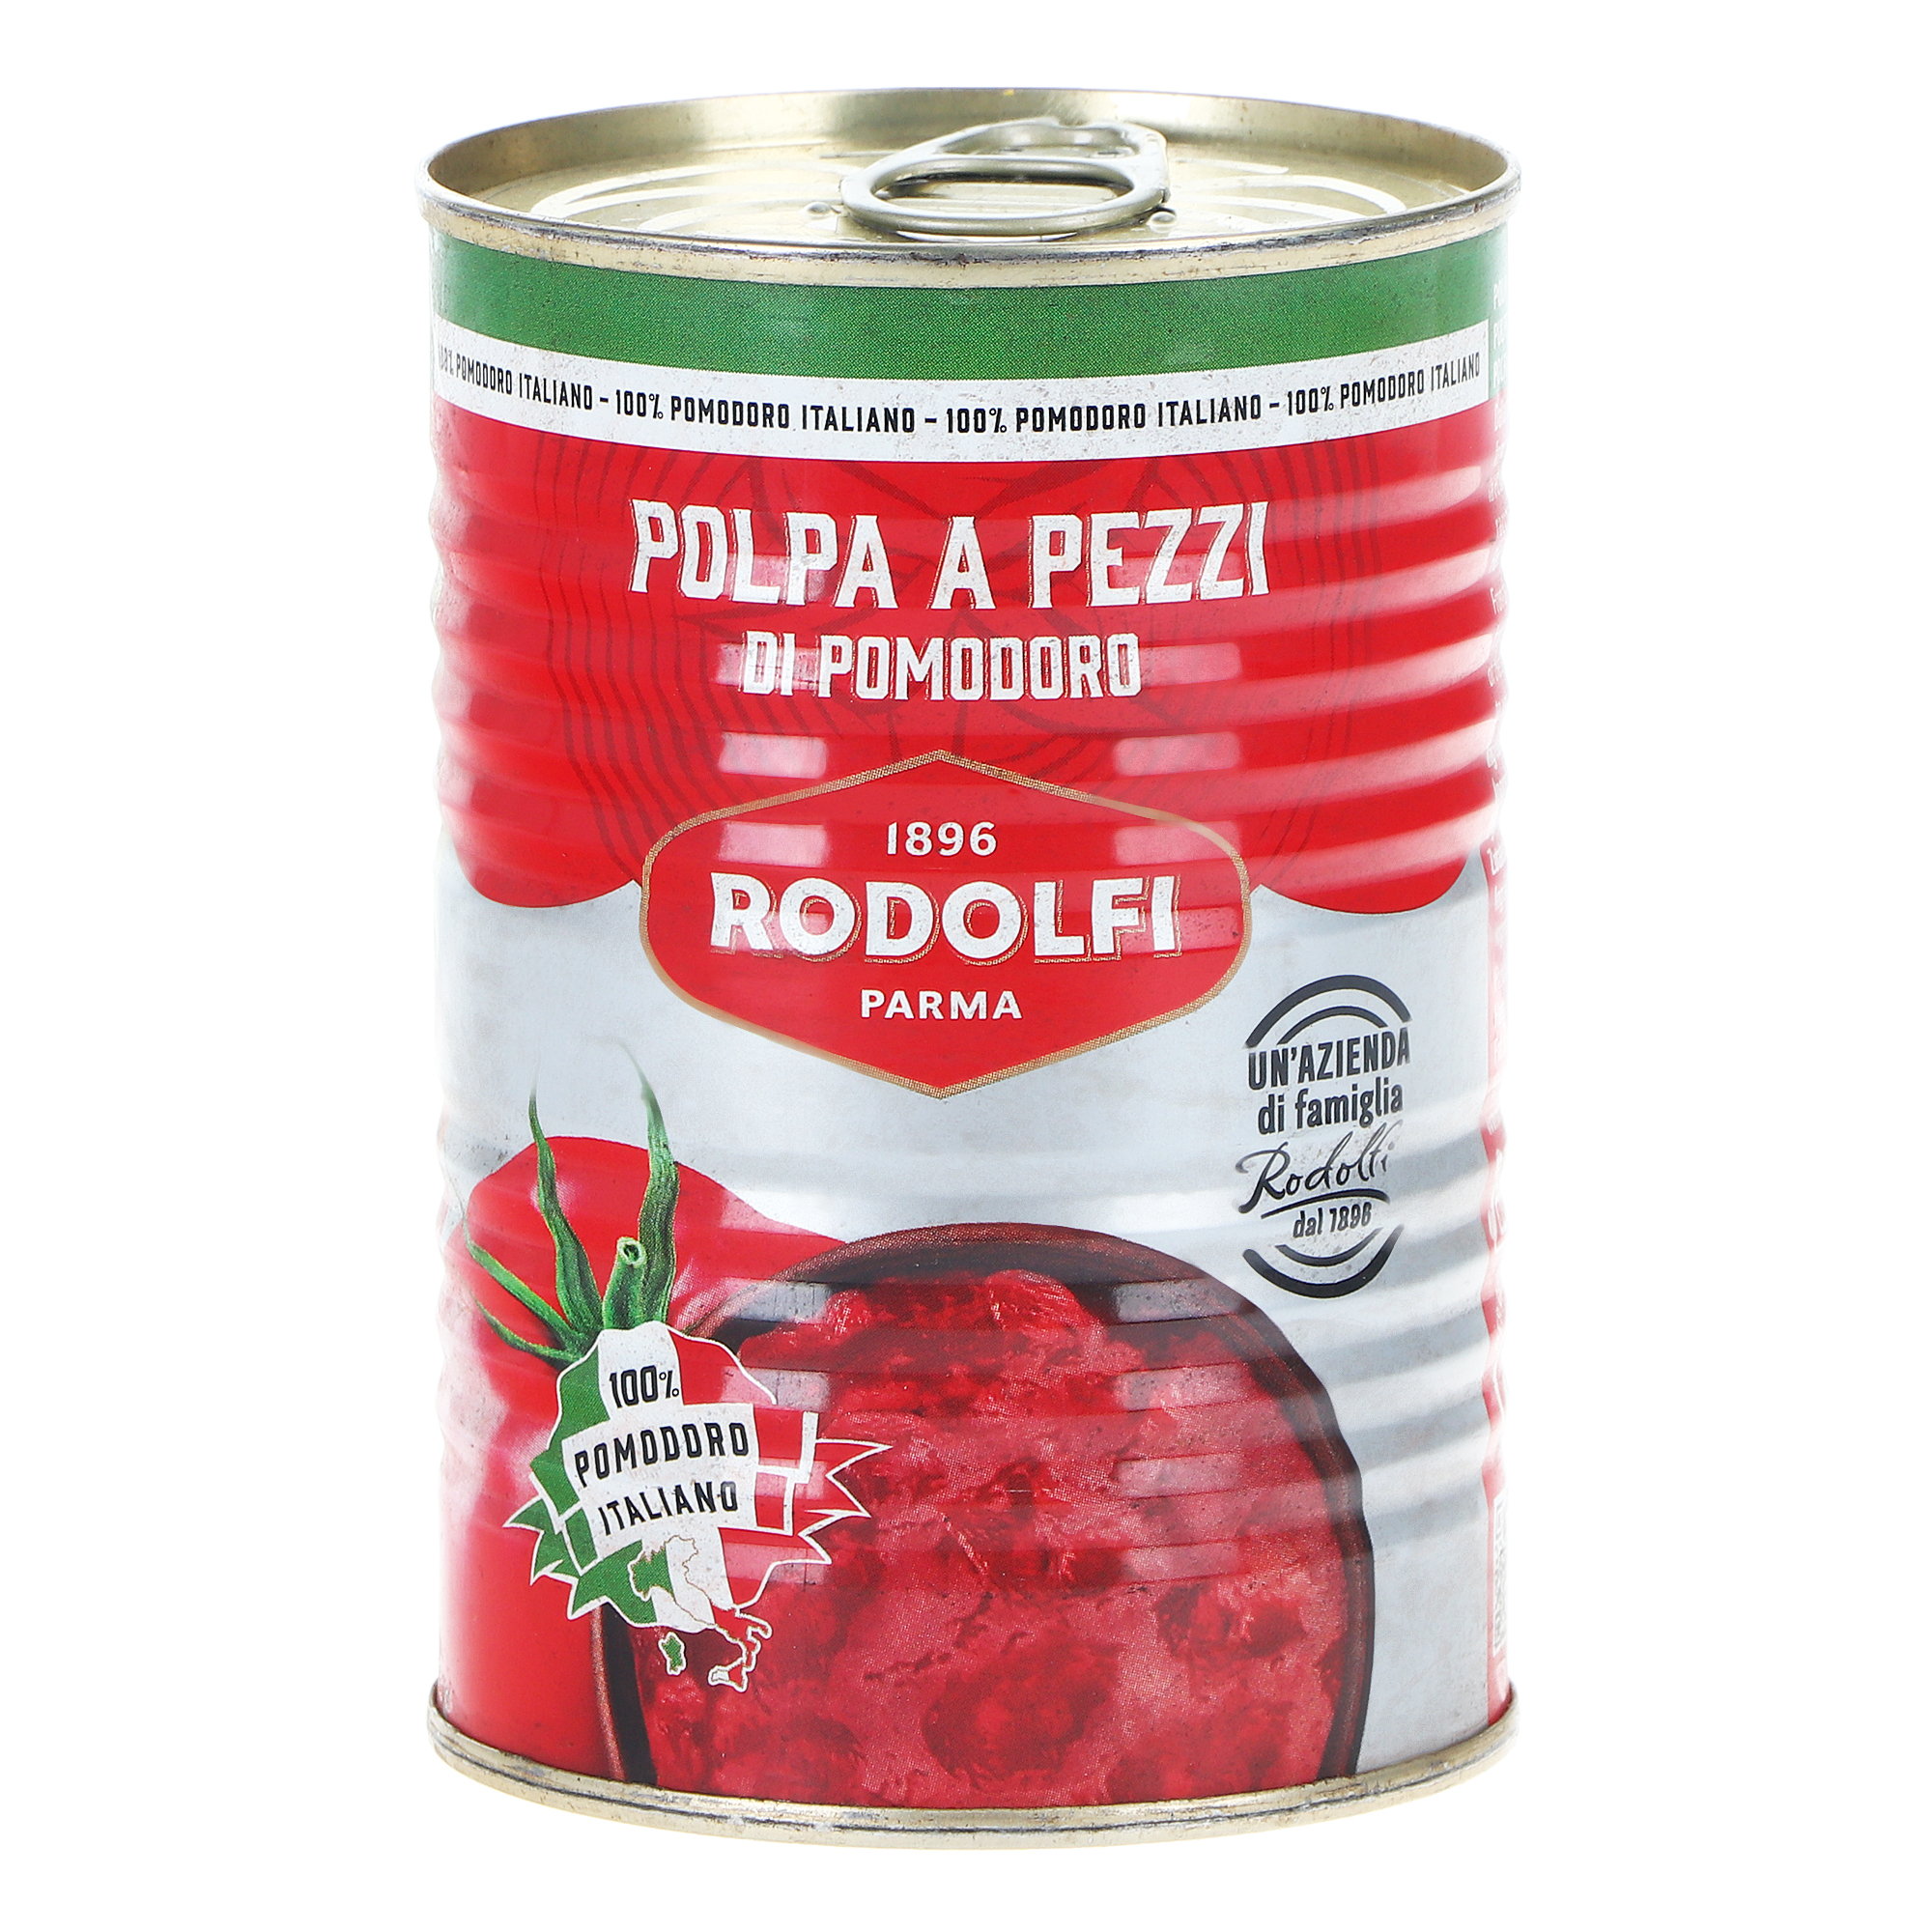 Томаты Rodolfi резаные очищенные, 400 г томаты очищенные bioitalia в томатном соке резаные 400 г